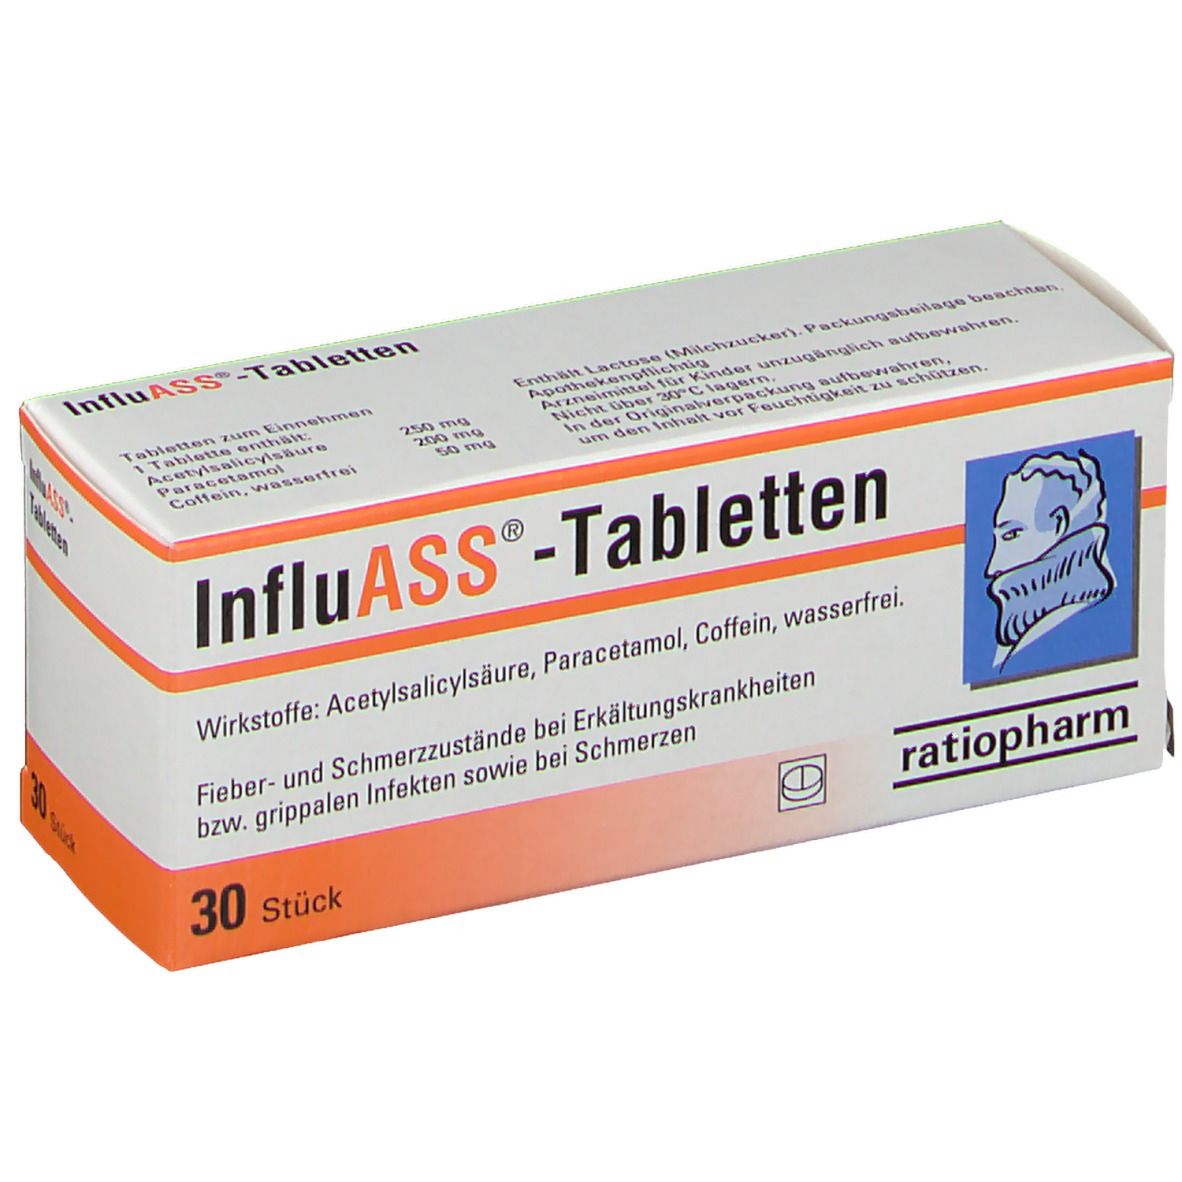 InfluASS®-Tabletten